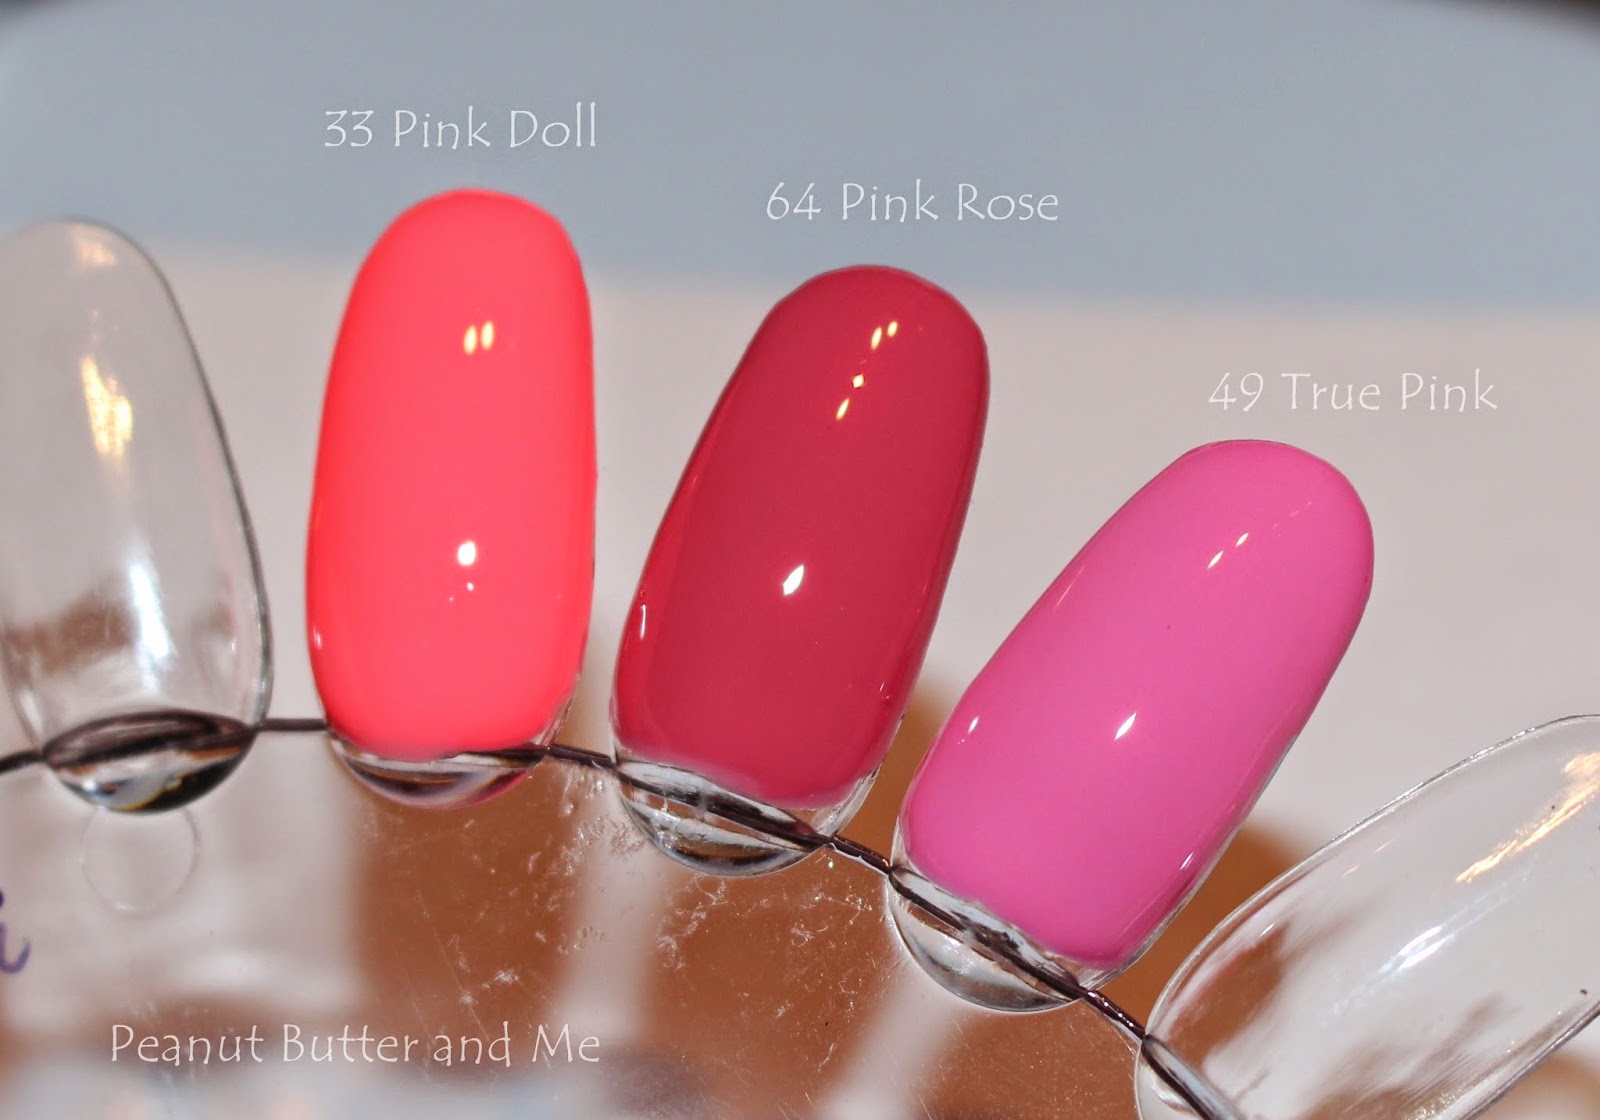 Gel nails semilac poland pink rose 064 64 doll 033 33 true pink 049 49 hybrydy lakier hybrydowy paznokcie nails różowy